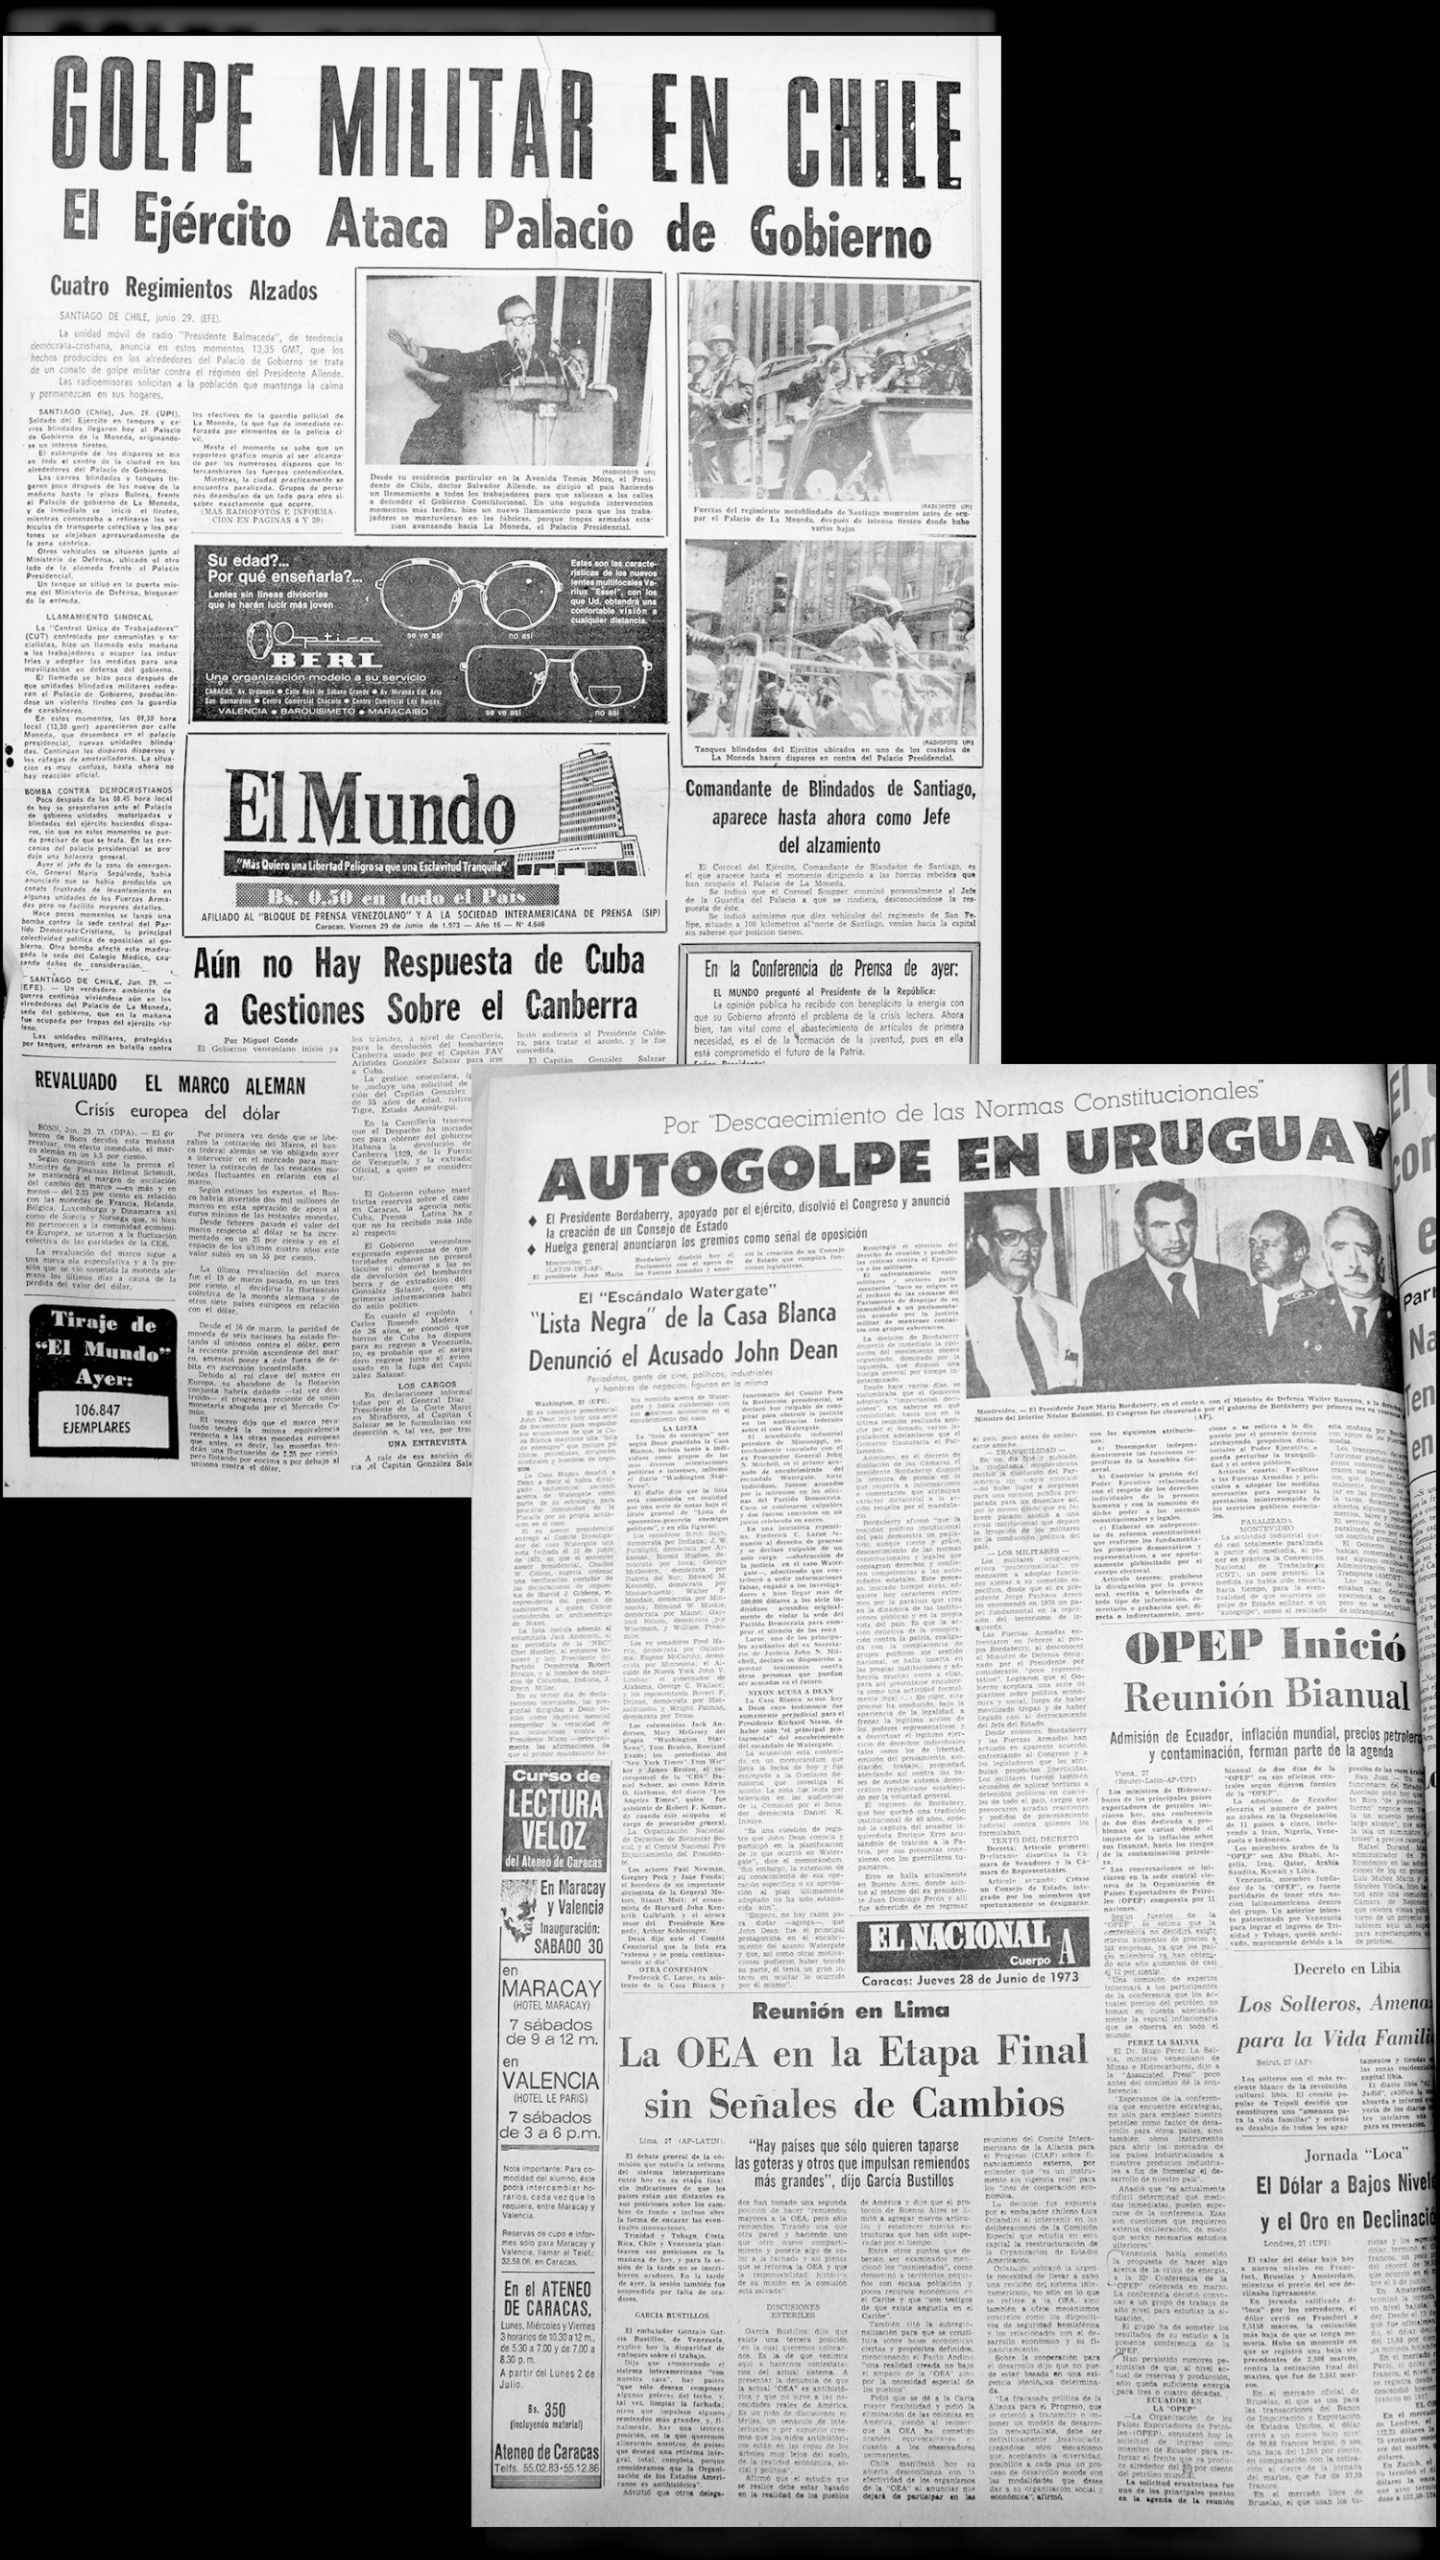 Dos golpes de estado en el Cono Sur (El Mundo, 29 de junio de 1973)